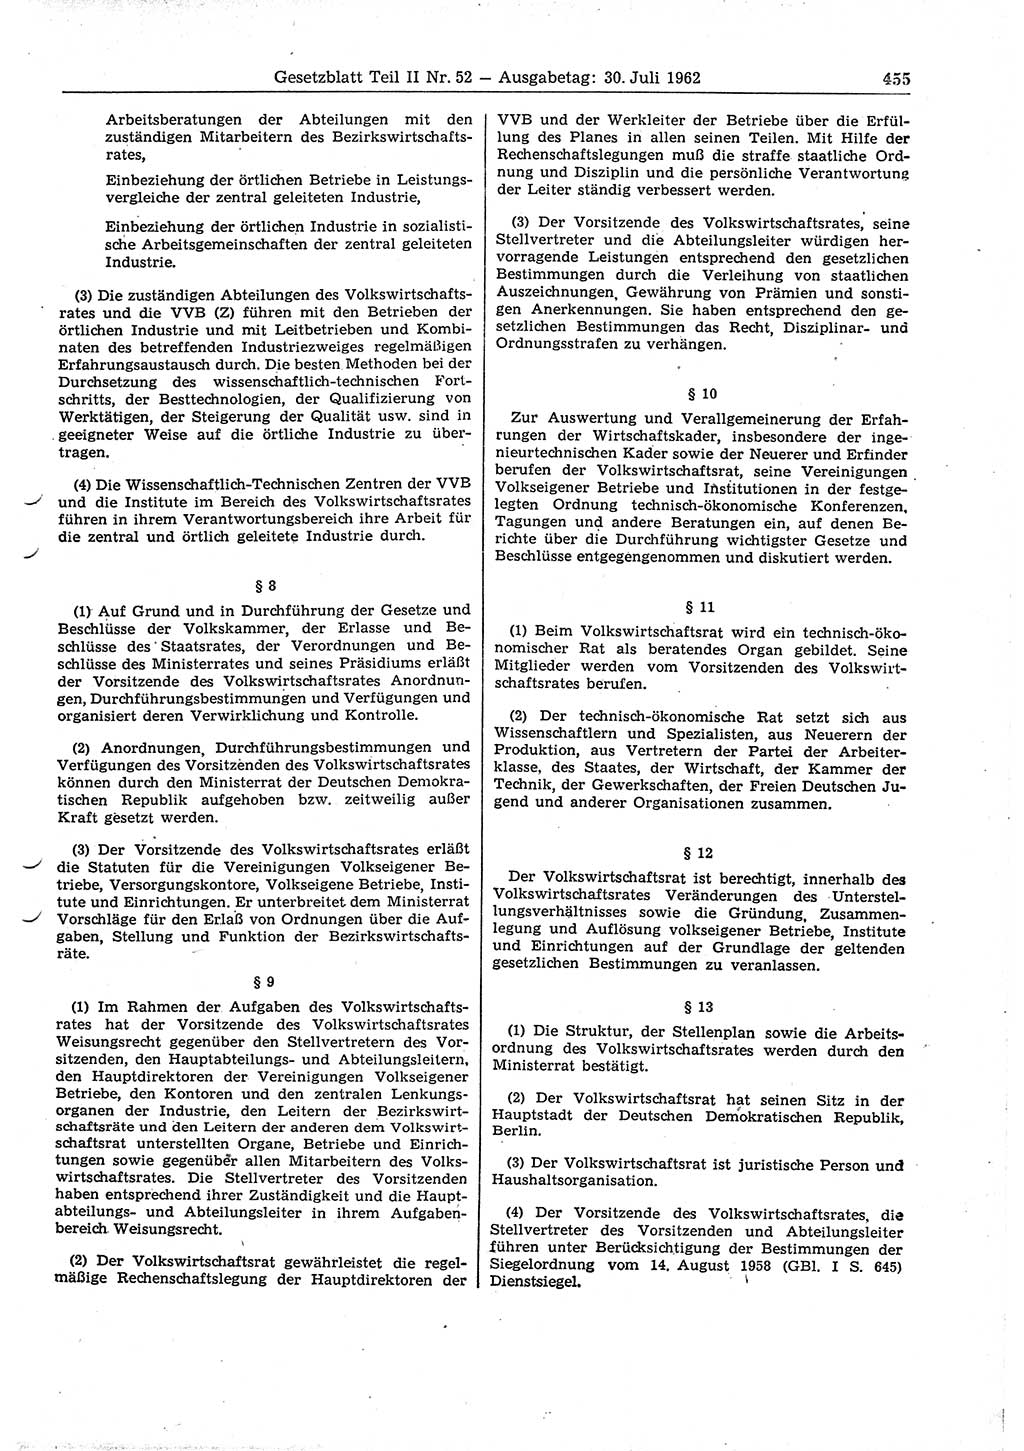 Gesetzblatt (GBl.) der Deutschen Demokratischen Republik (DDR) Teil ⅠⅠ 1962, Seite 455 (GBl. DDR ⅠⅠ 1962, S. 455)